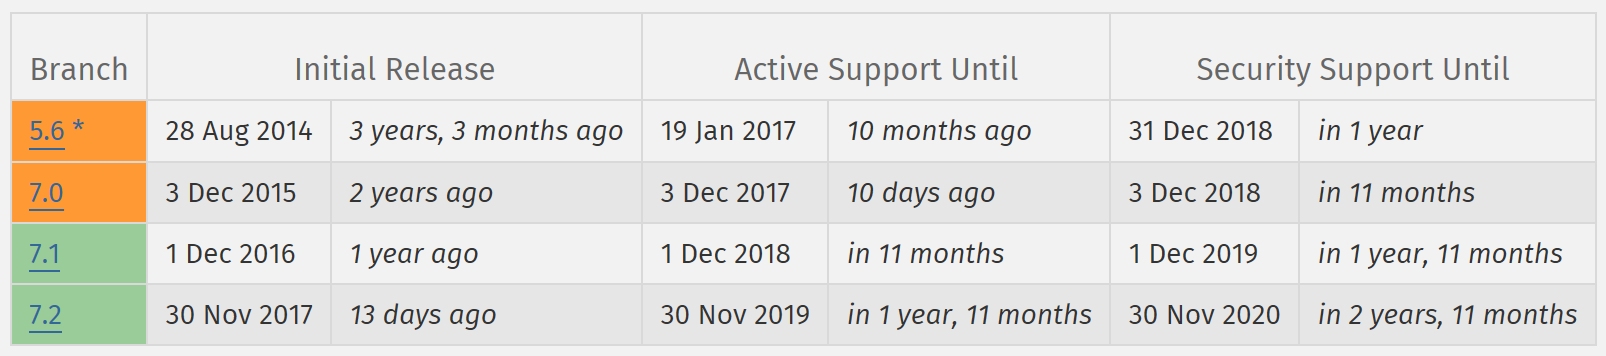 Aktuelle Support-Zeittabelle der verschiedenen PHP-Versionen